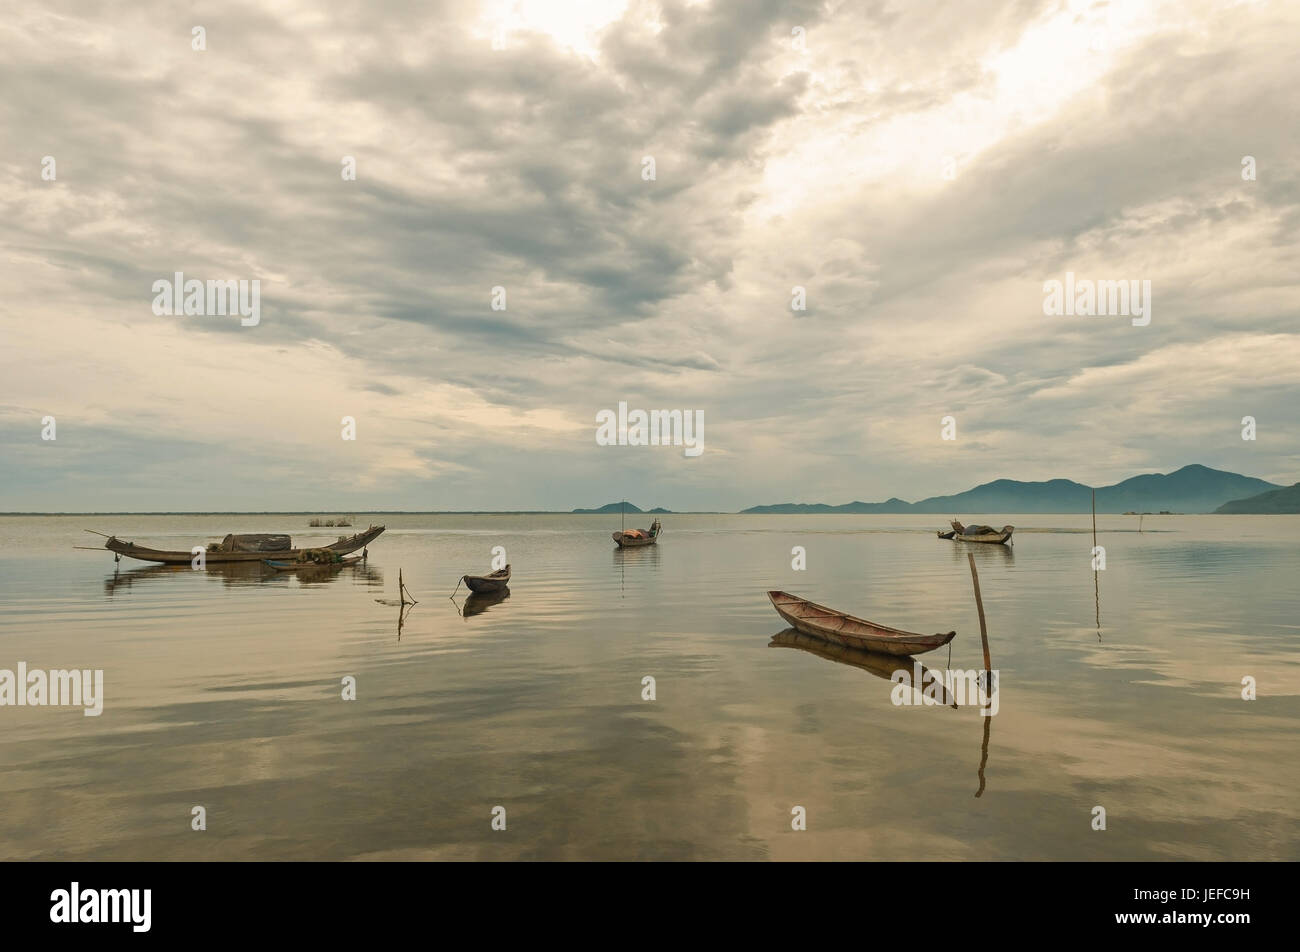 Traditionelle vietnamesische Fischerboote namens Sampan (drei Planken) auf einem See in Zentralvietnam zwischen den Städten ein und Hué bei Sonnenaufgang, Asien Hoi. Stockfoto